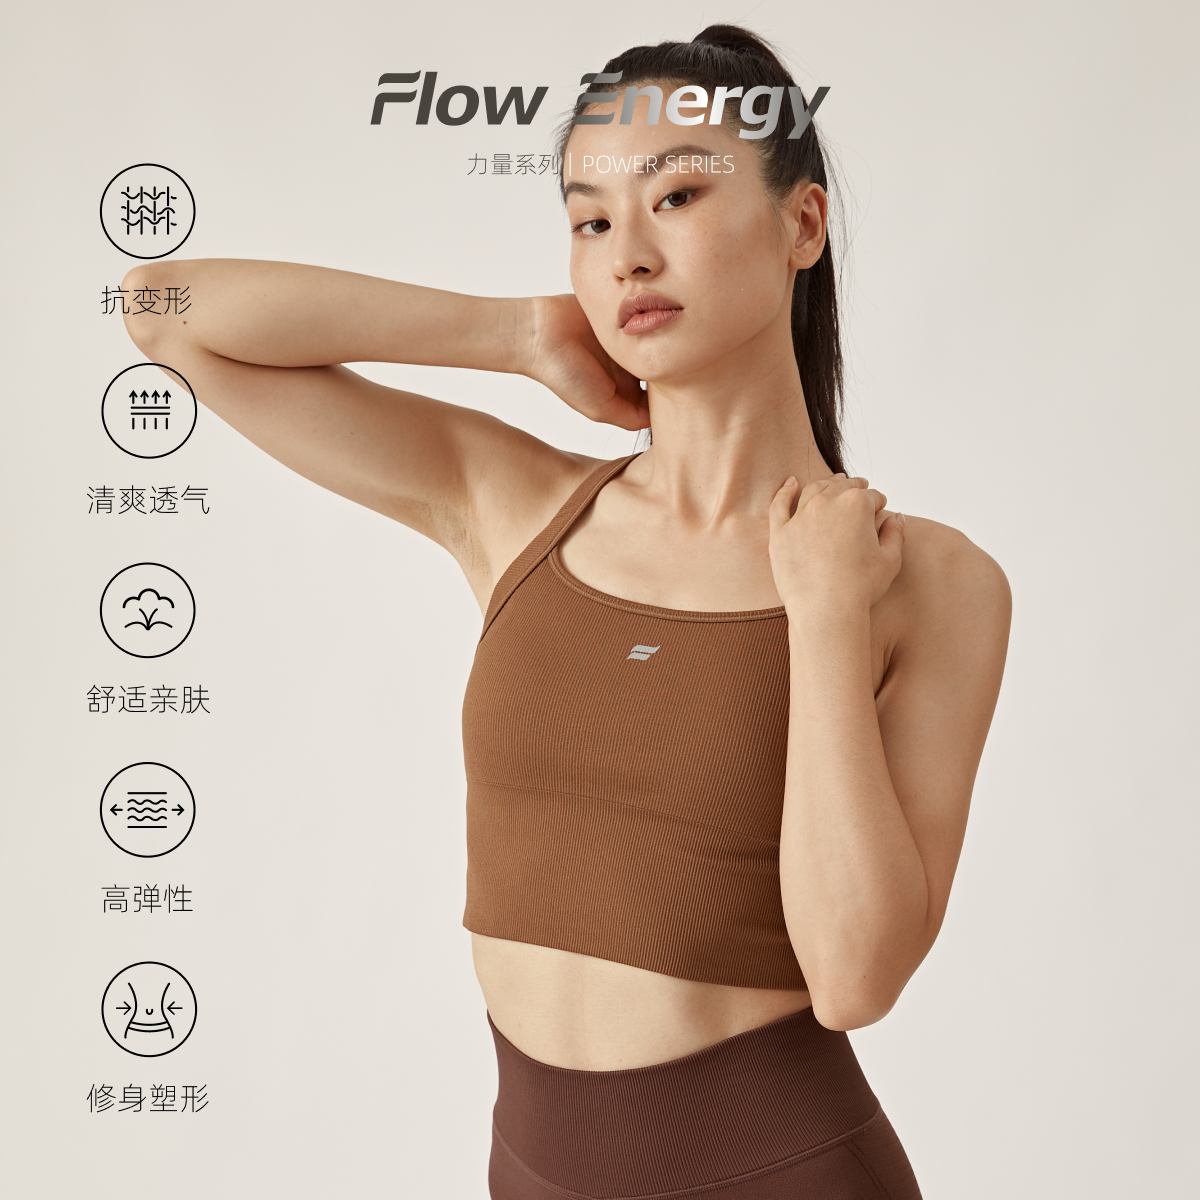 Flow energy 运动内衣美背瑜伽服女防震下垂文胸背心健身训练上衣